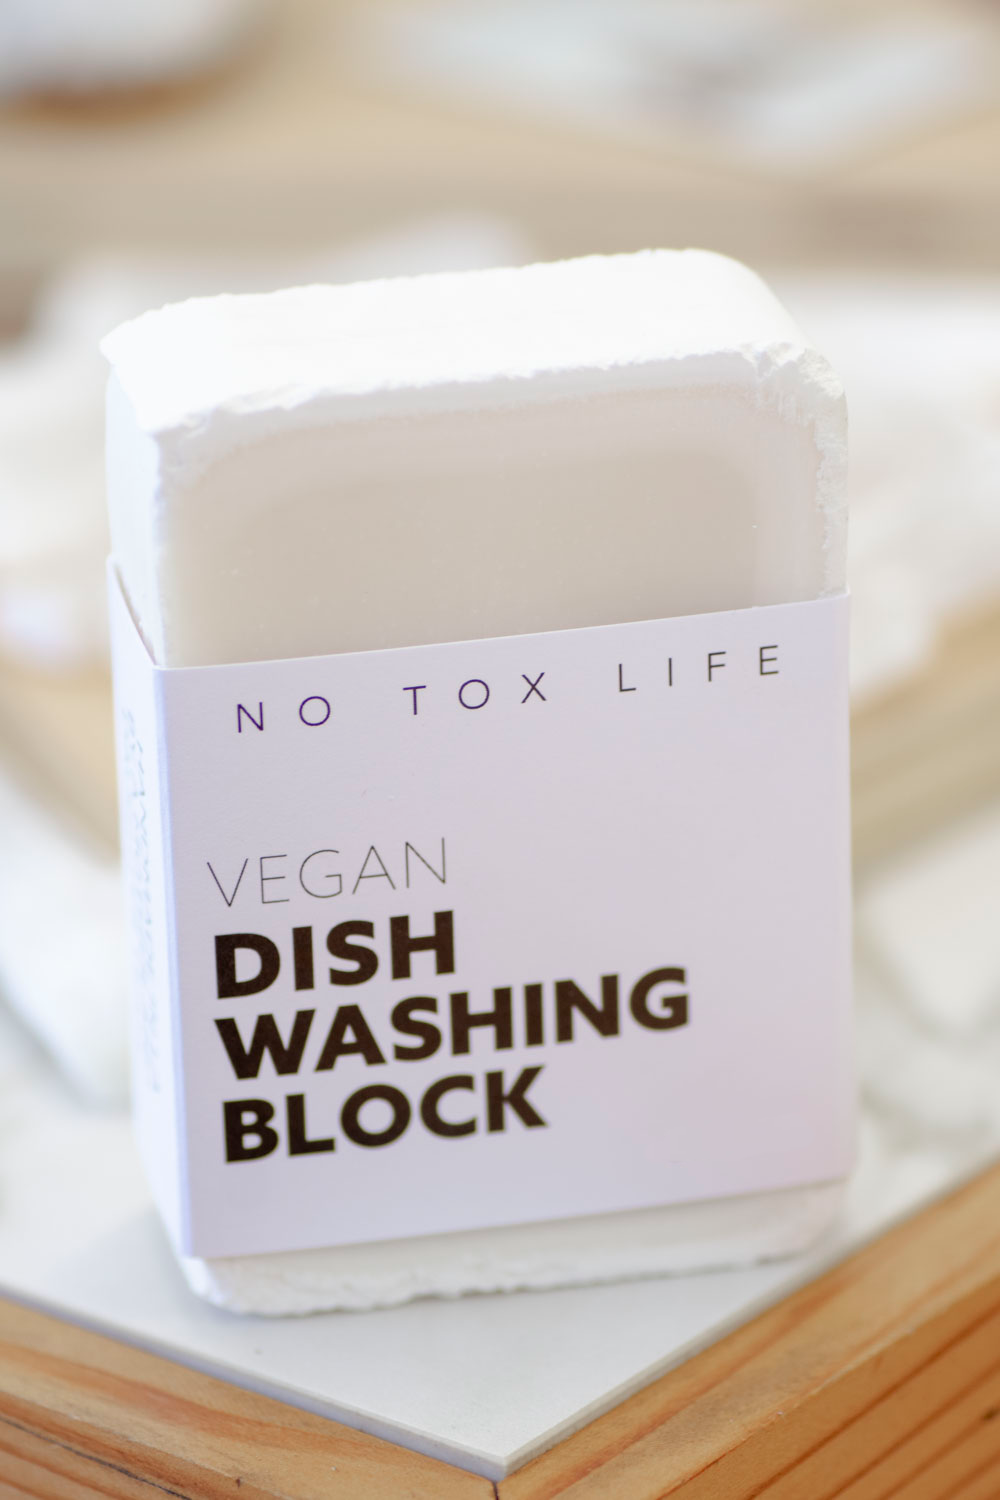 No Tox Life - Vegan Dish Washing Block